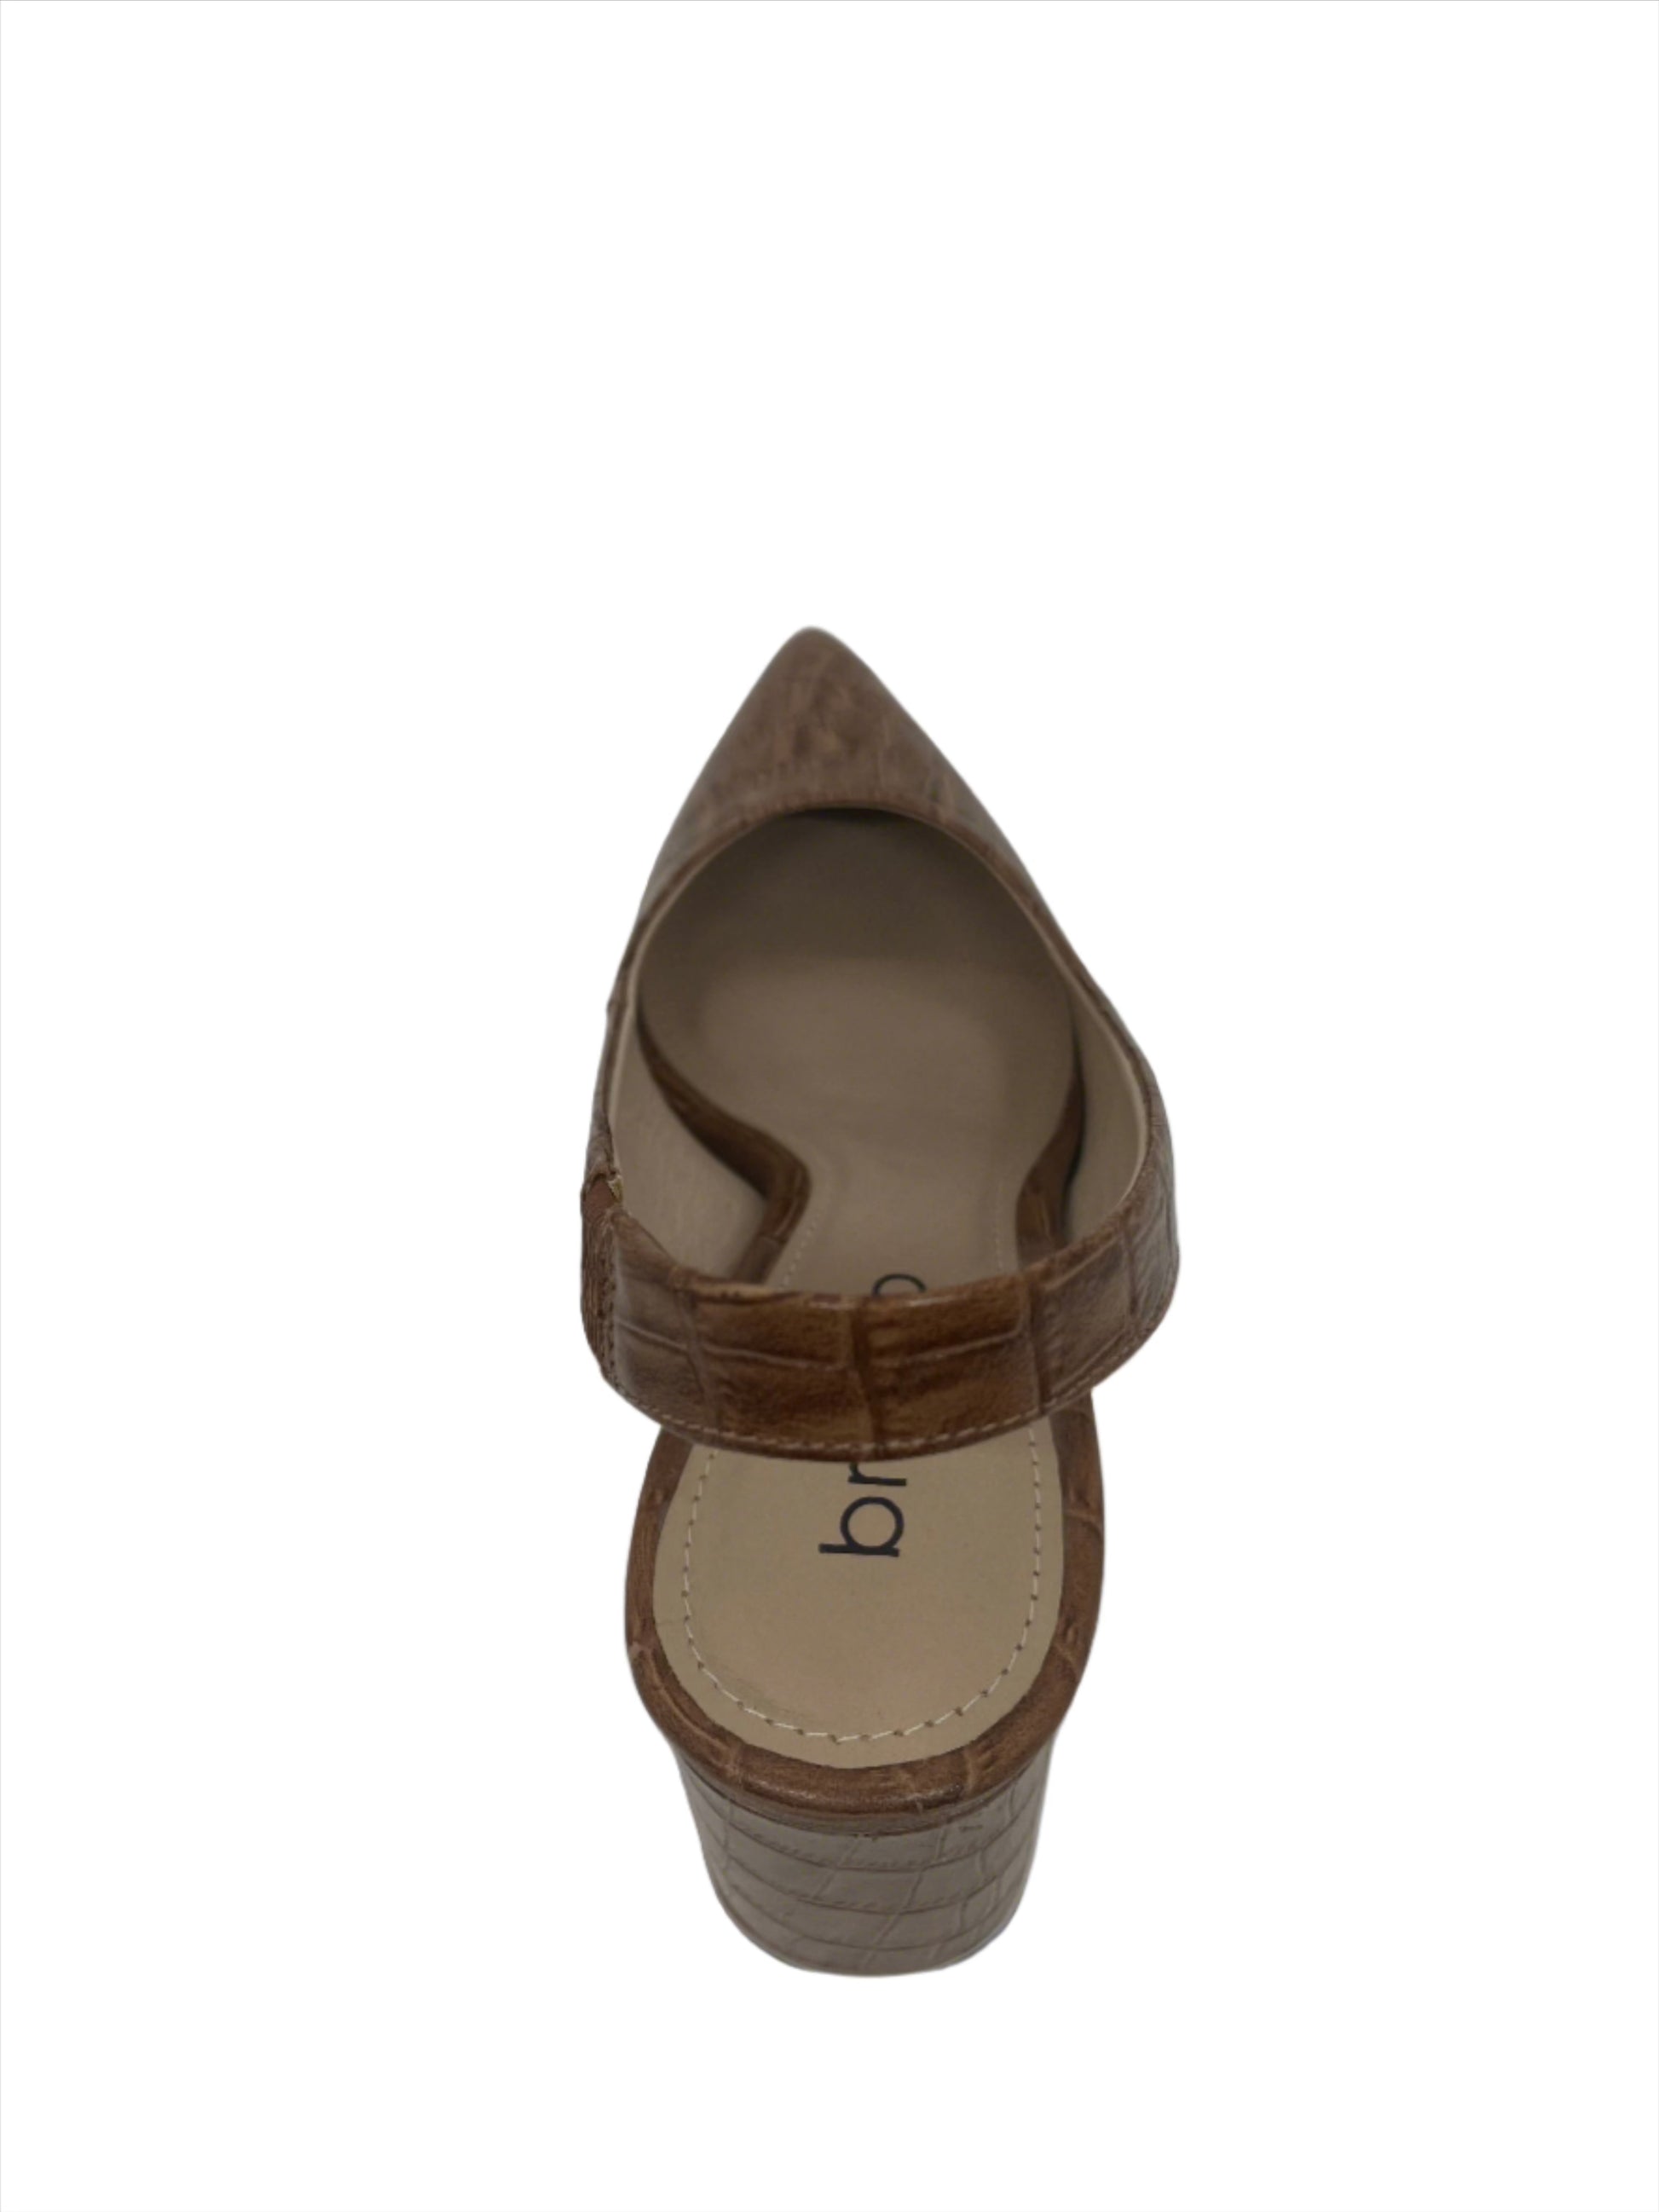 LIZZIE LOW BLOCK HEEL - BRAZILIO - 2090510, womens footwear - Stomp Shoes Darwin